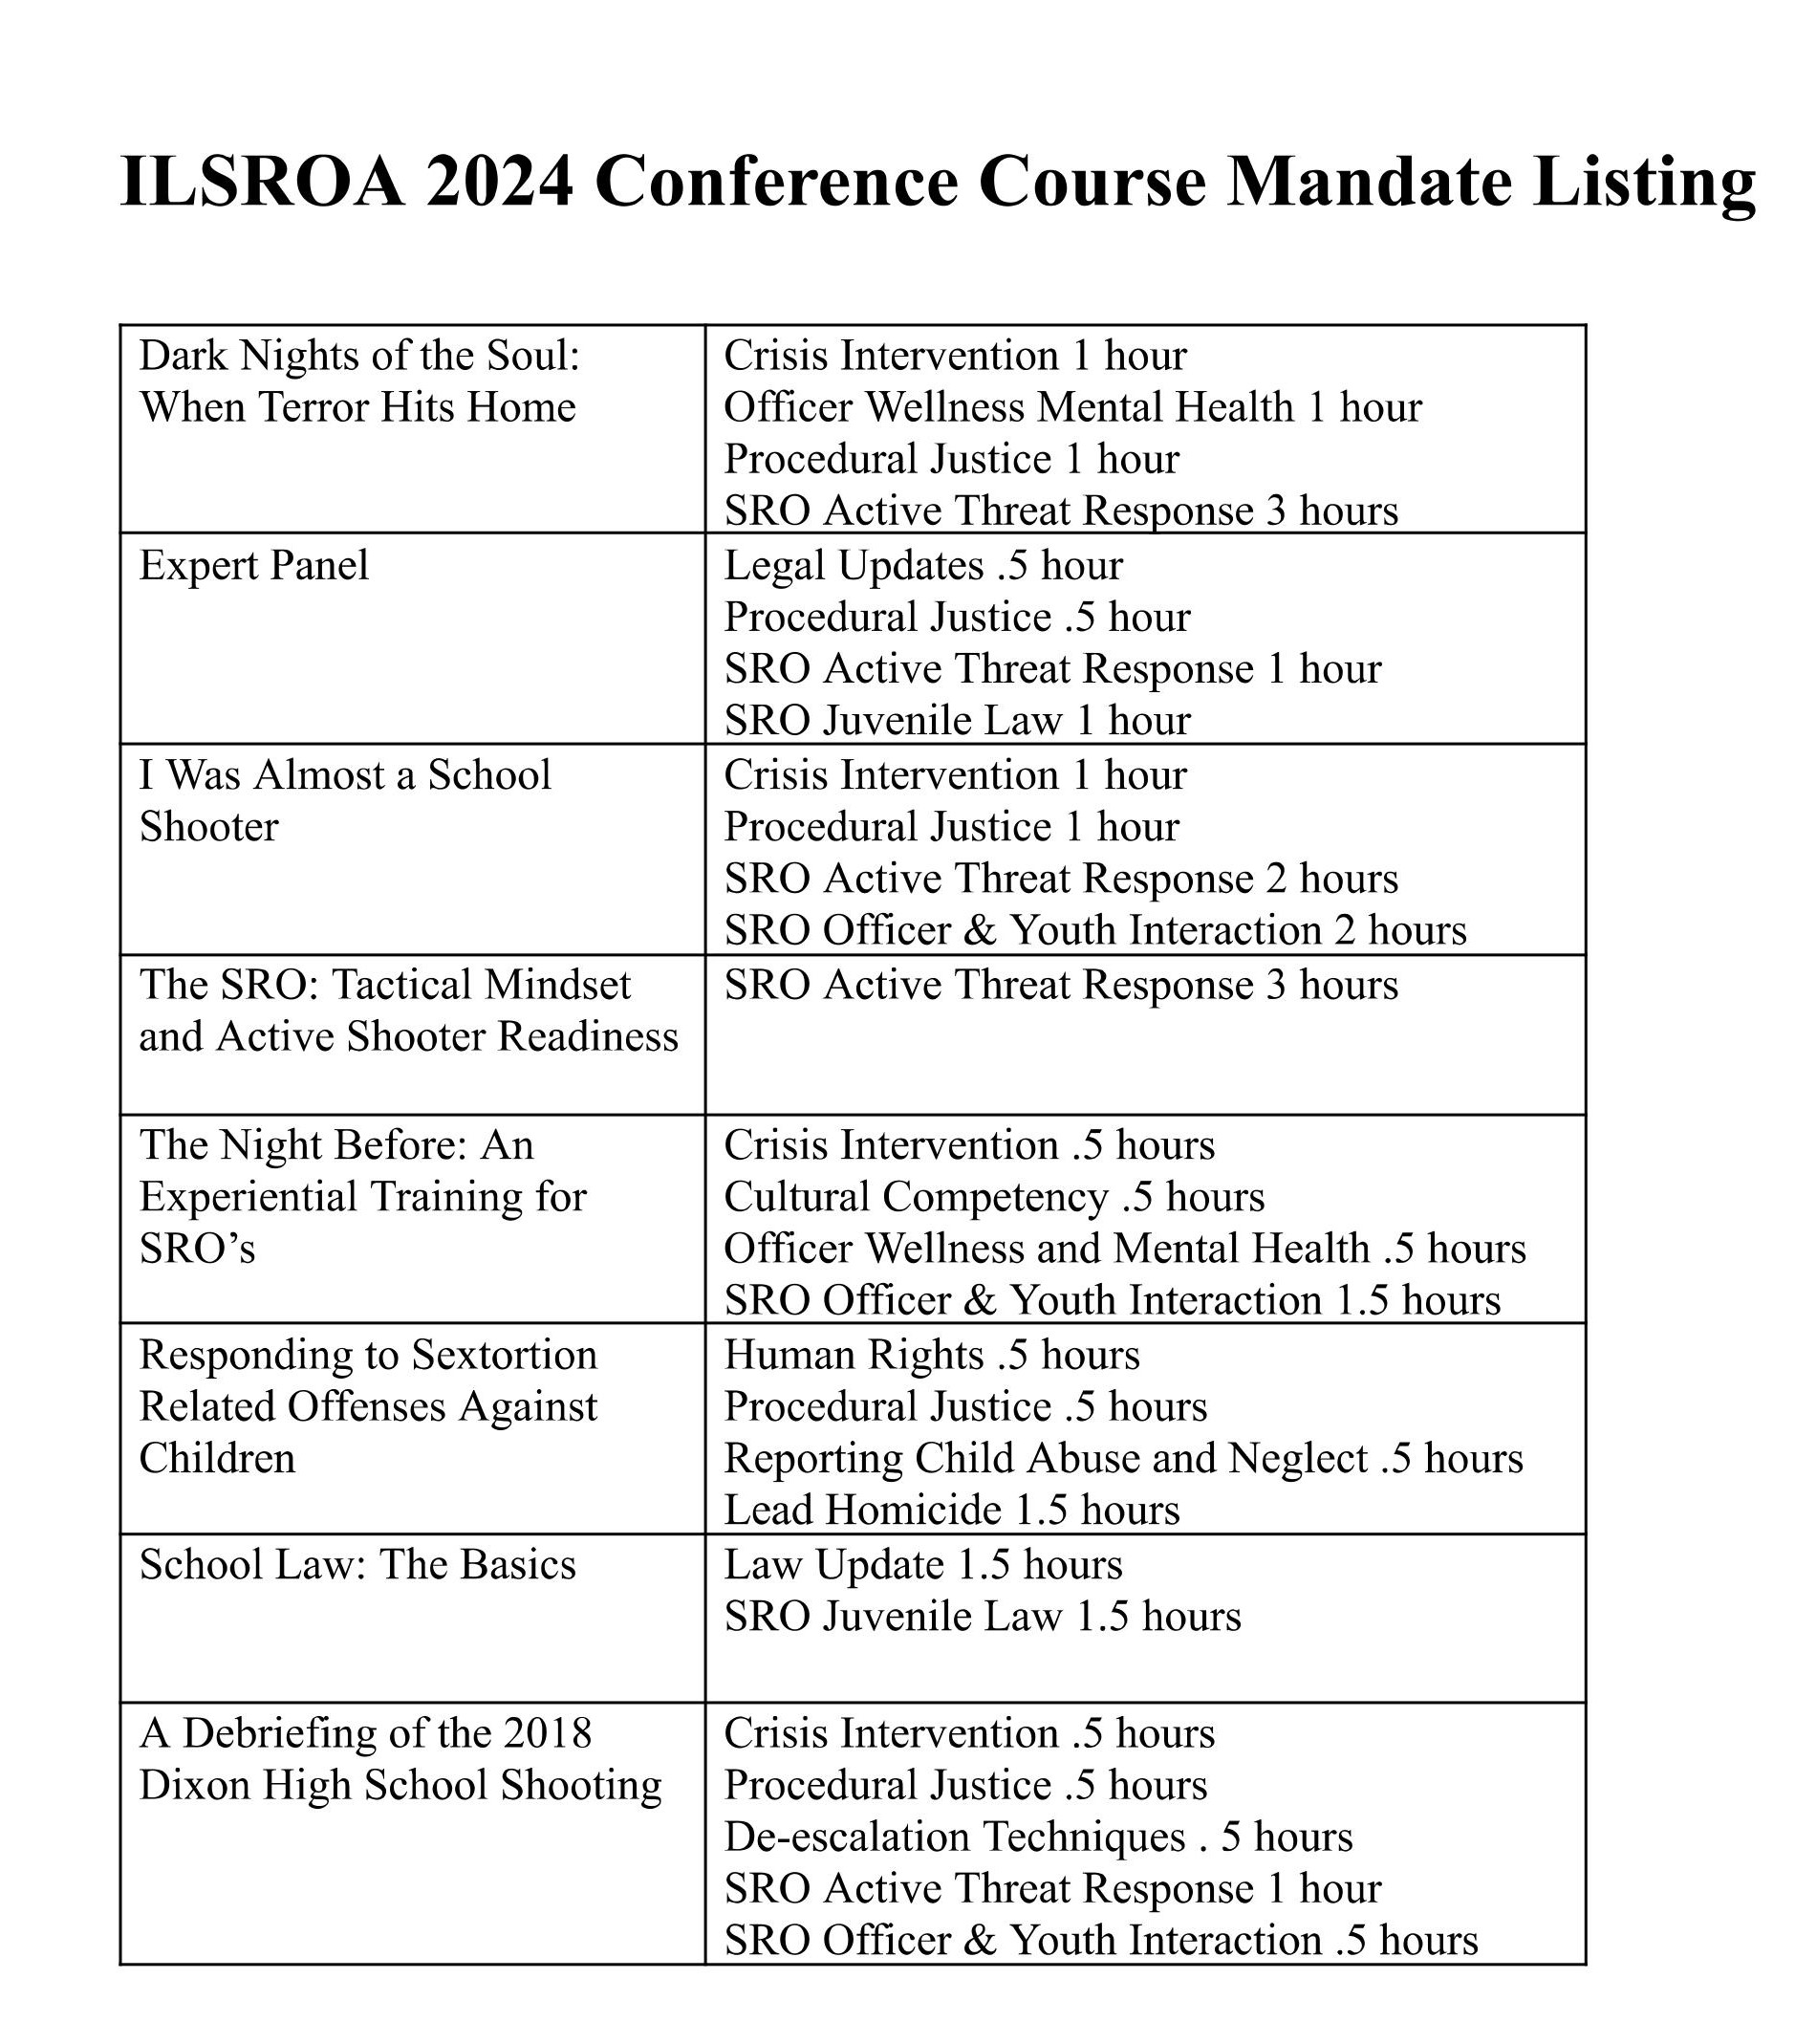 ILSROA 24 mandate hours pdf